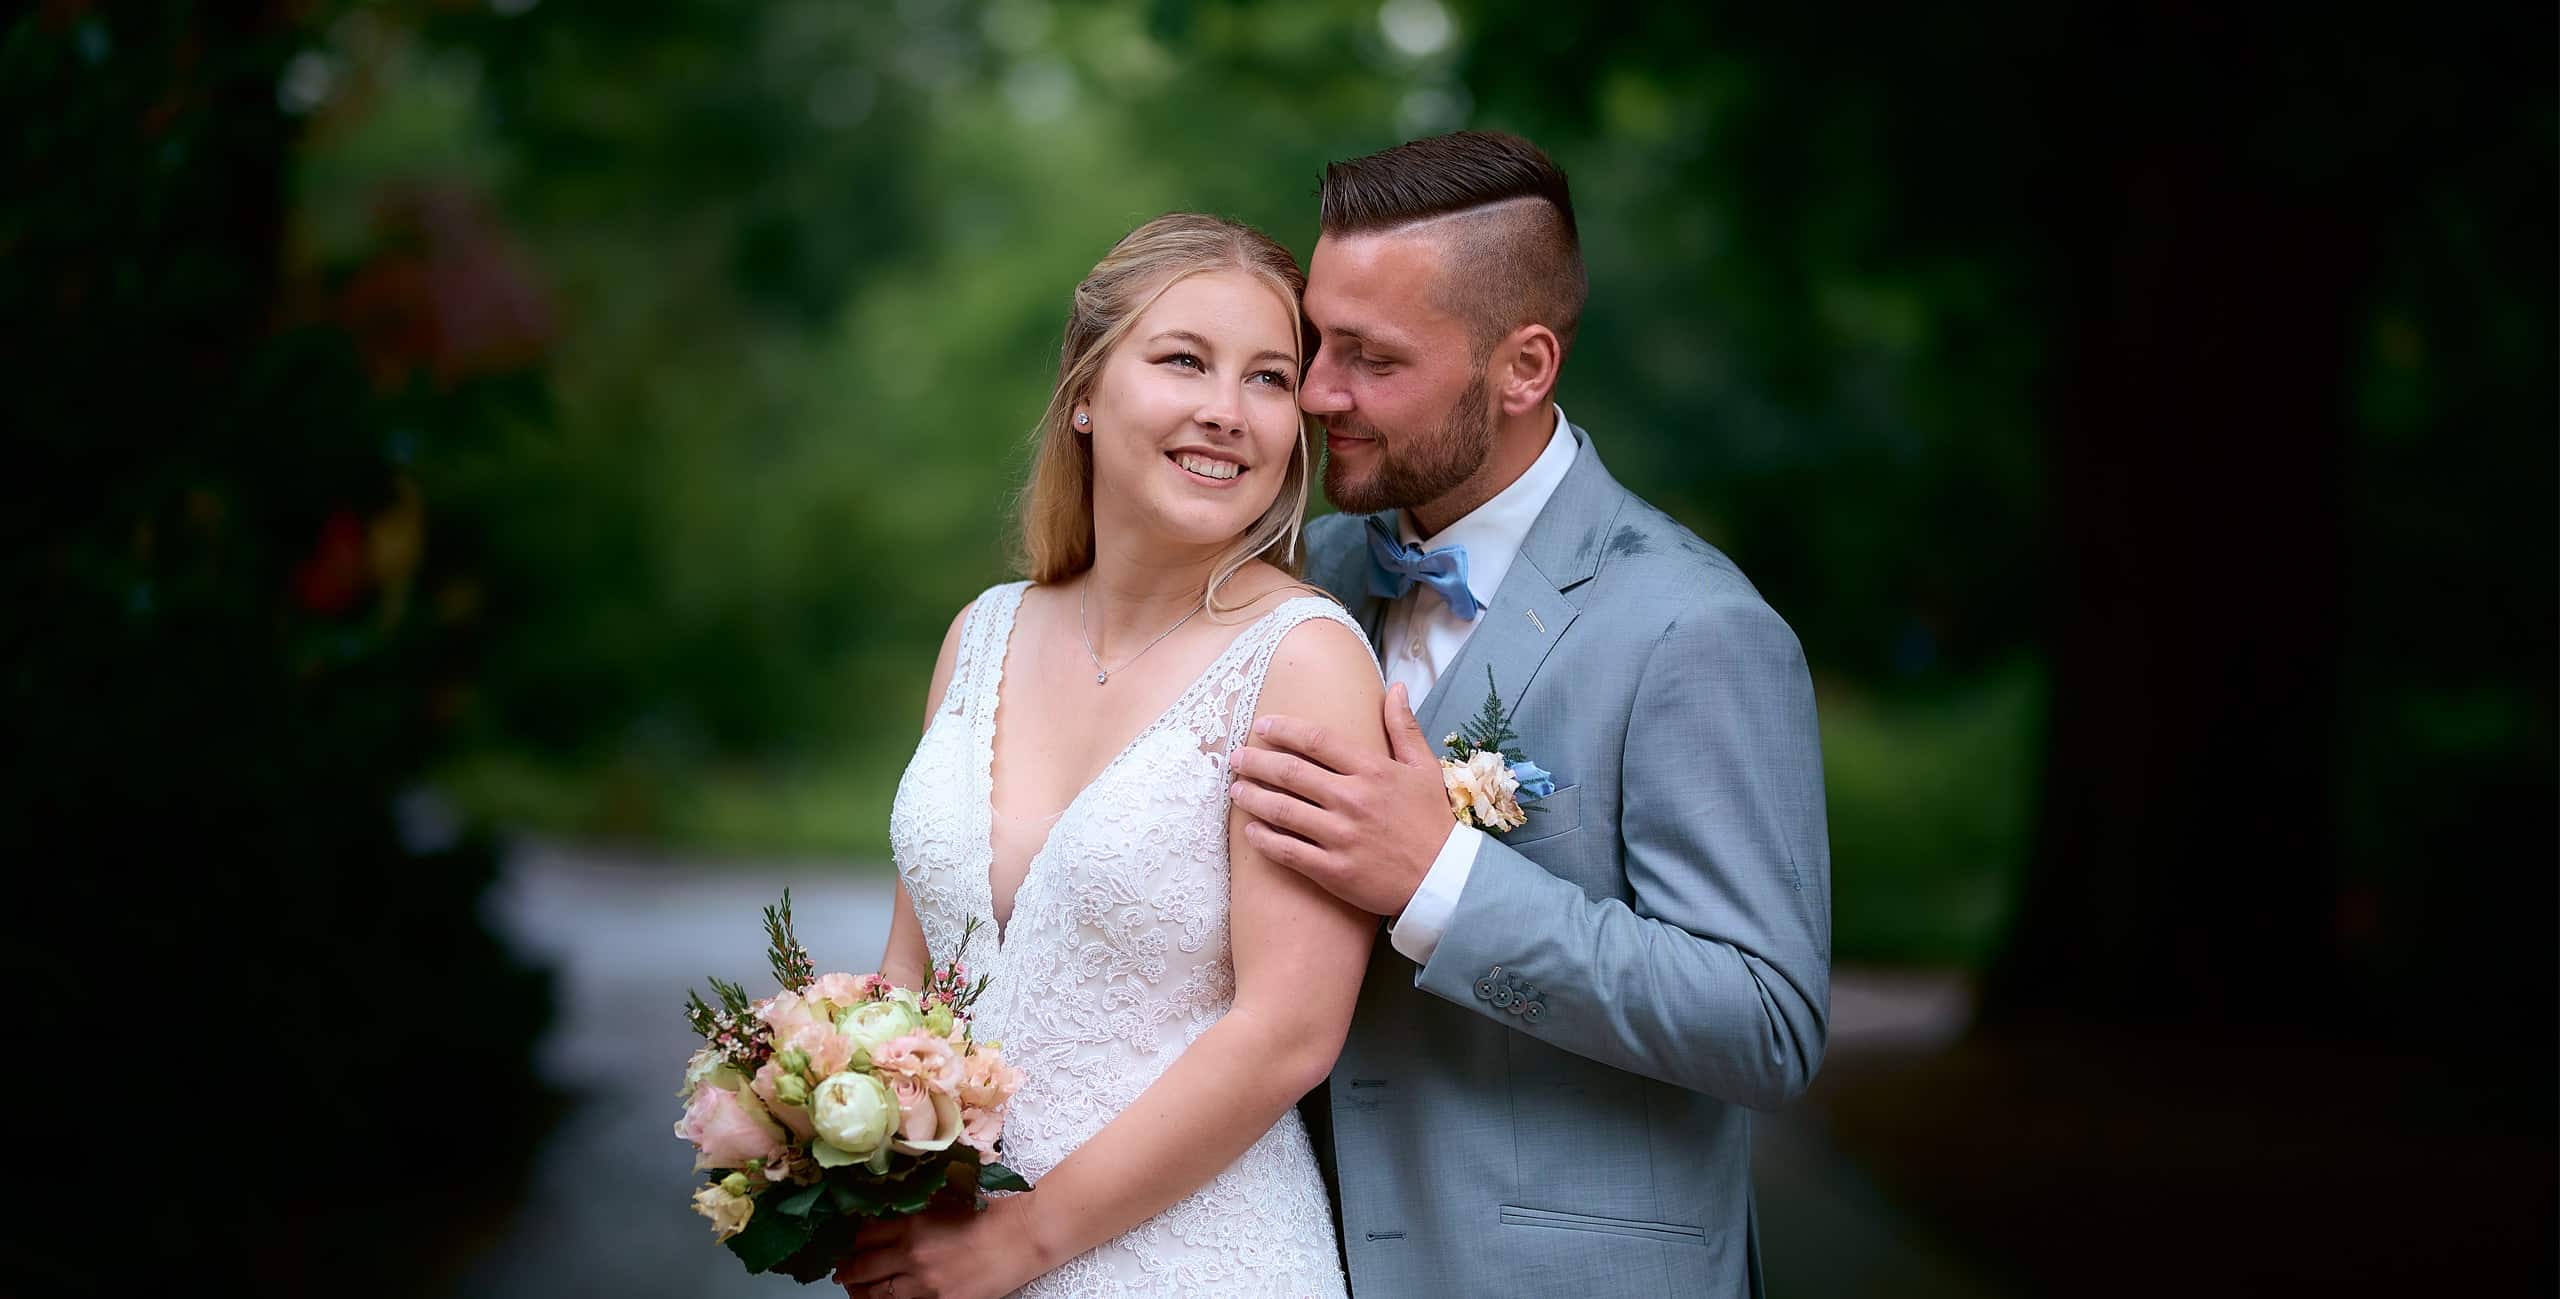 Hochzeitsfotograf Villingen-Schwenningen ein Brautpaar, dass sich leidenschaftlich in den Armen liegt.. Der Bräutigam trägt einen hellblauen Anzug und die Braut ein weißes Kleid.